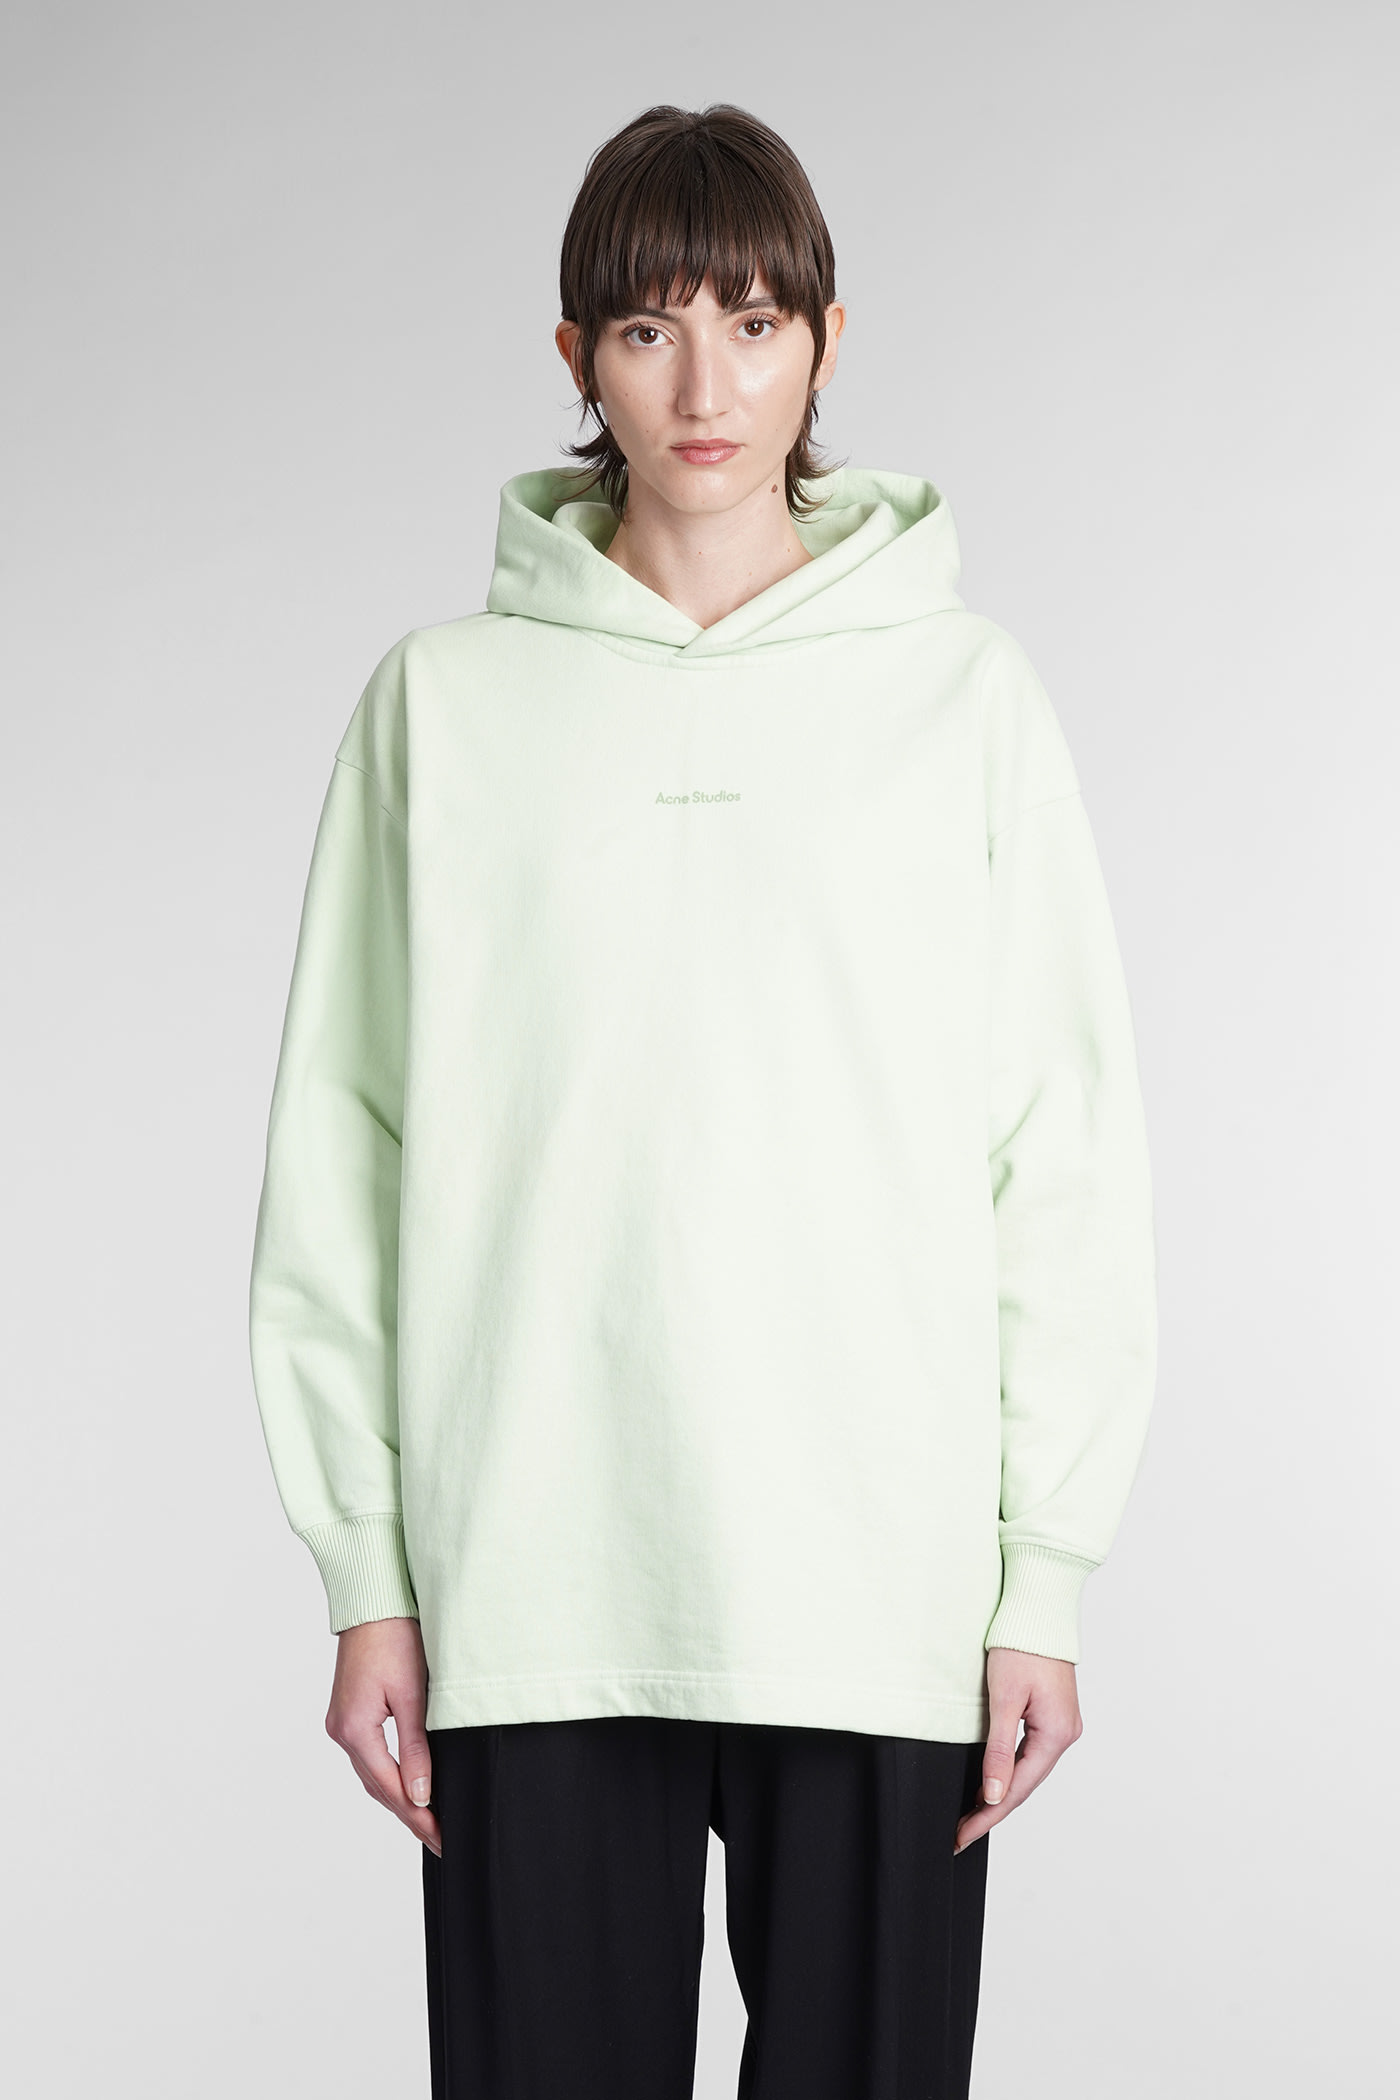 Acne Studios Sweatshirt In Green Cotton